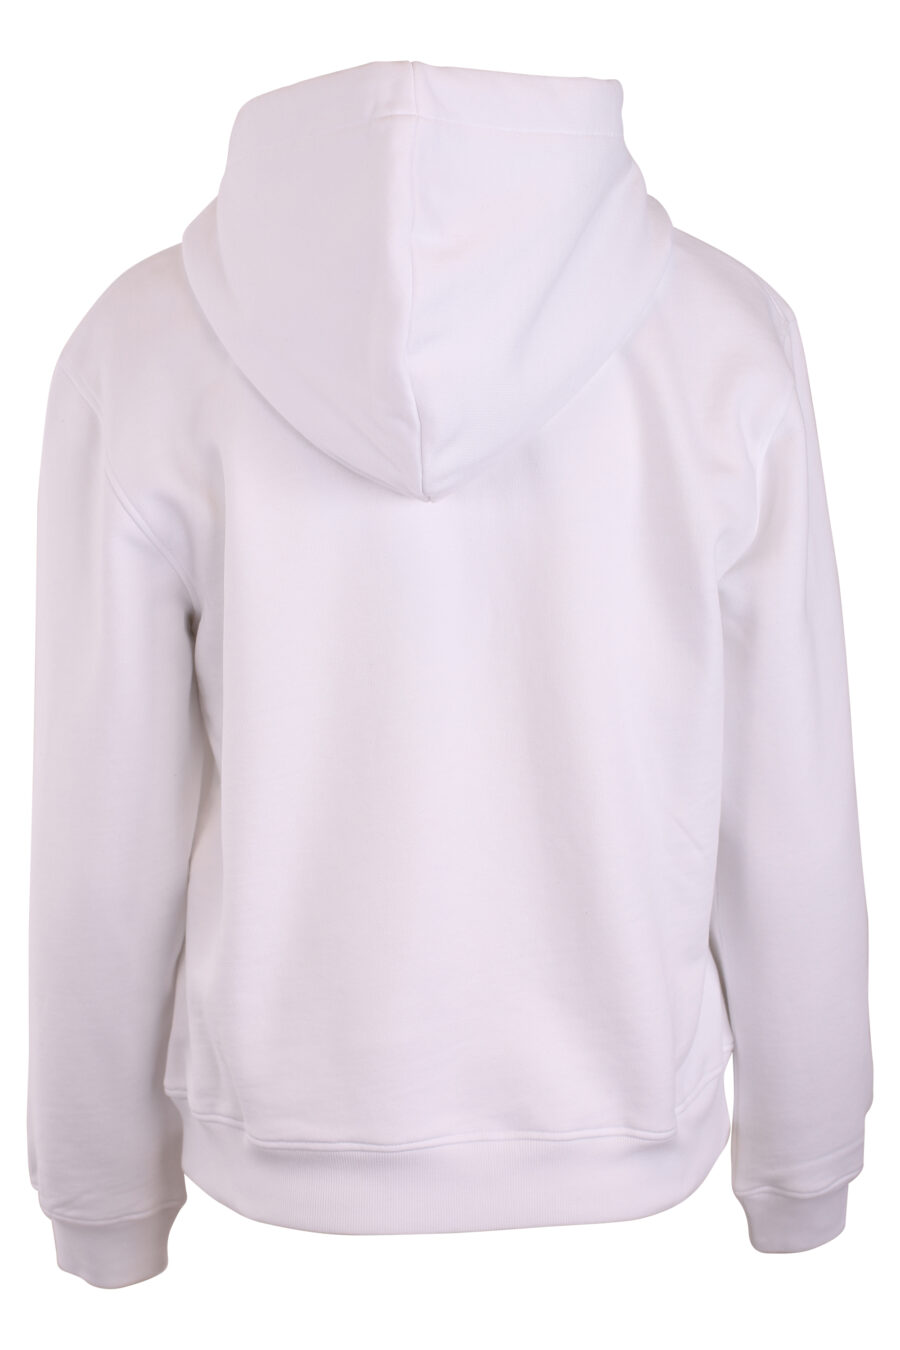 Sudadera blanca con capucha y logo "smiley" - IMG 3269